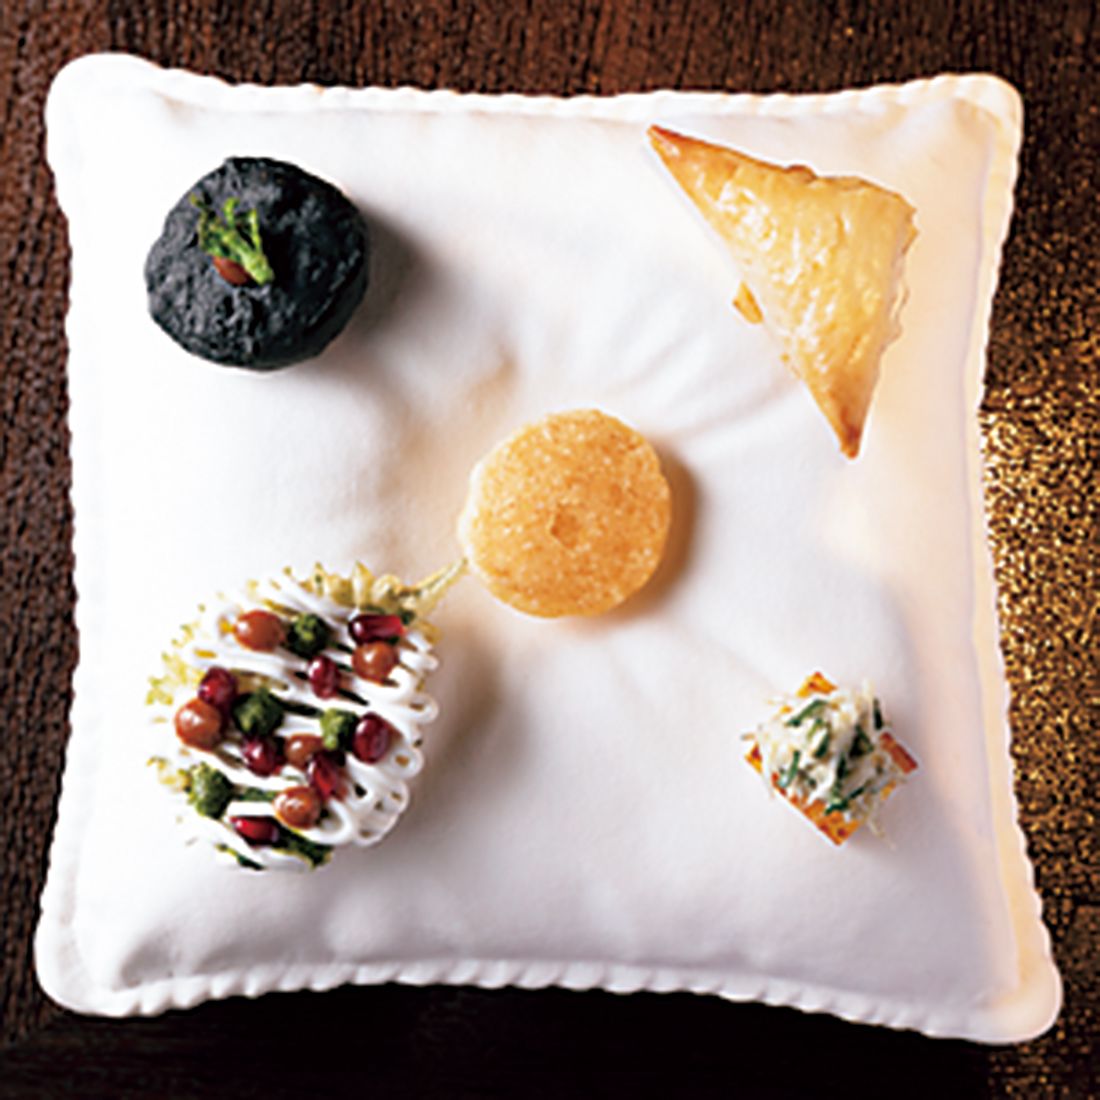 シソの天ぷらにタマリンドのチャツネとザクロをのせたものは「チャート」という屋台料理がベース。